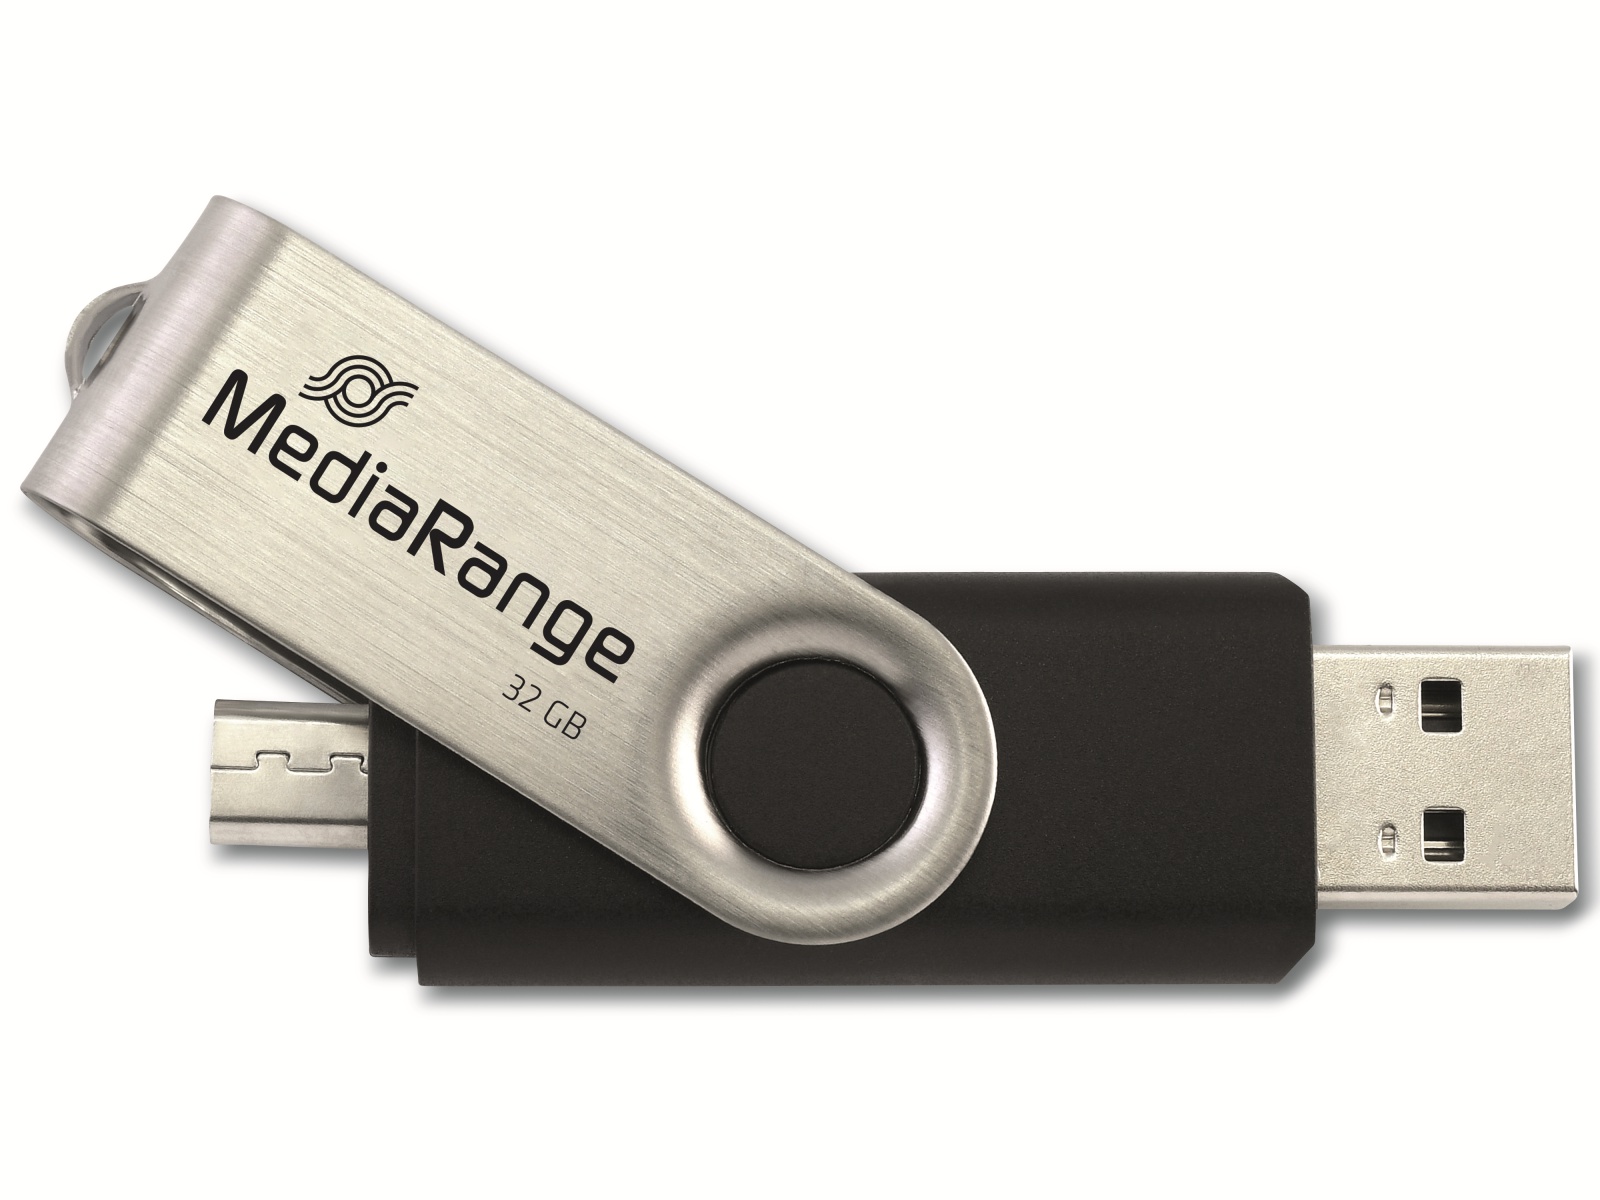 MEDIARANGE USB-Stick MR932-2, USB 2.0 und Micro, 32 GB